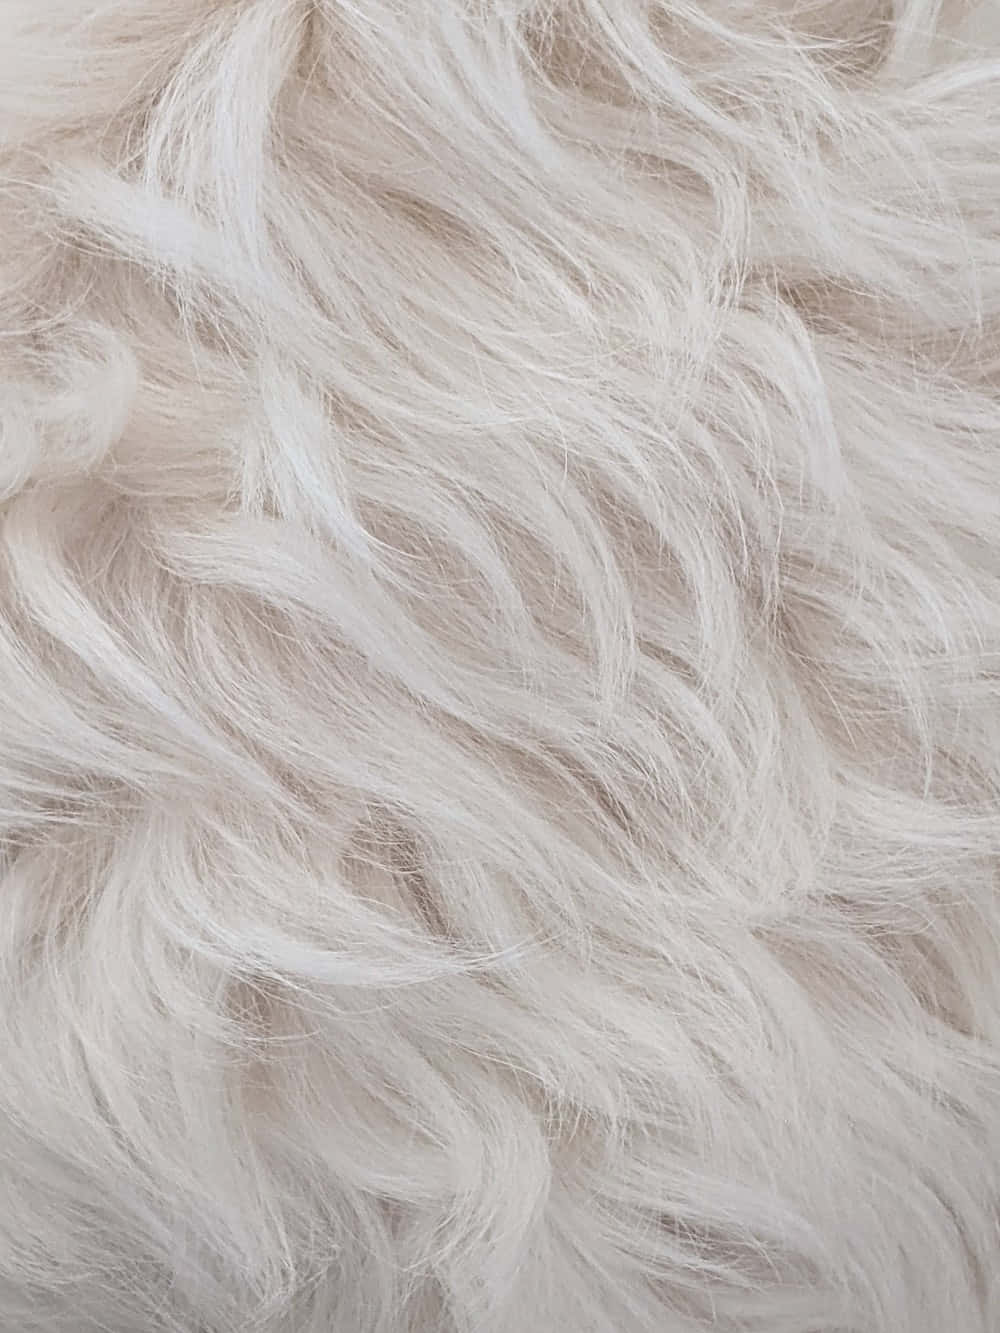 Close Up of Fur Texture